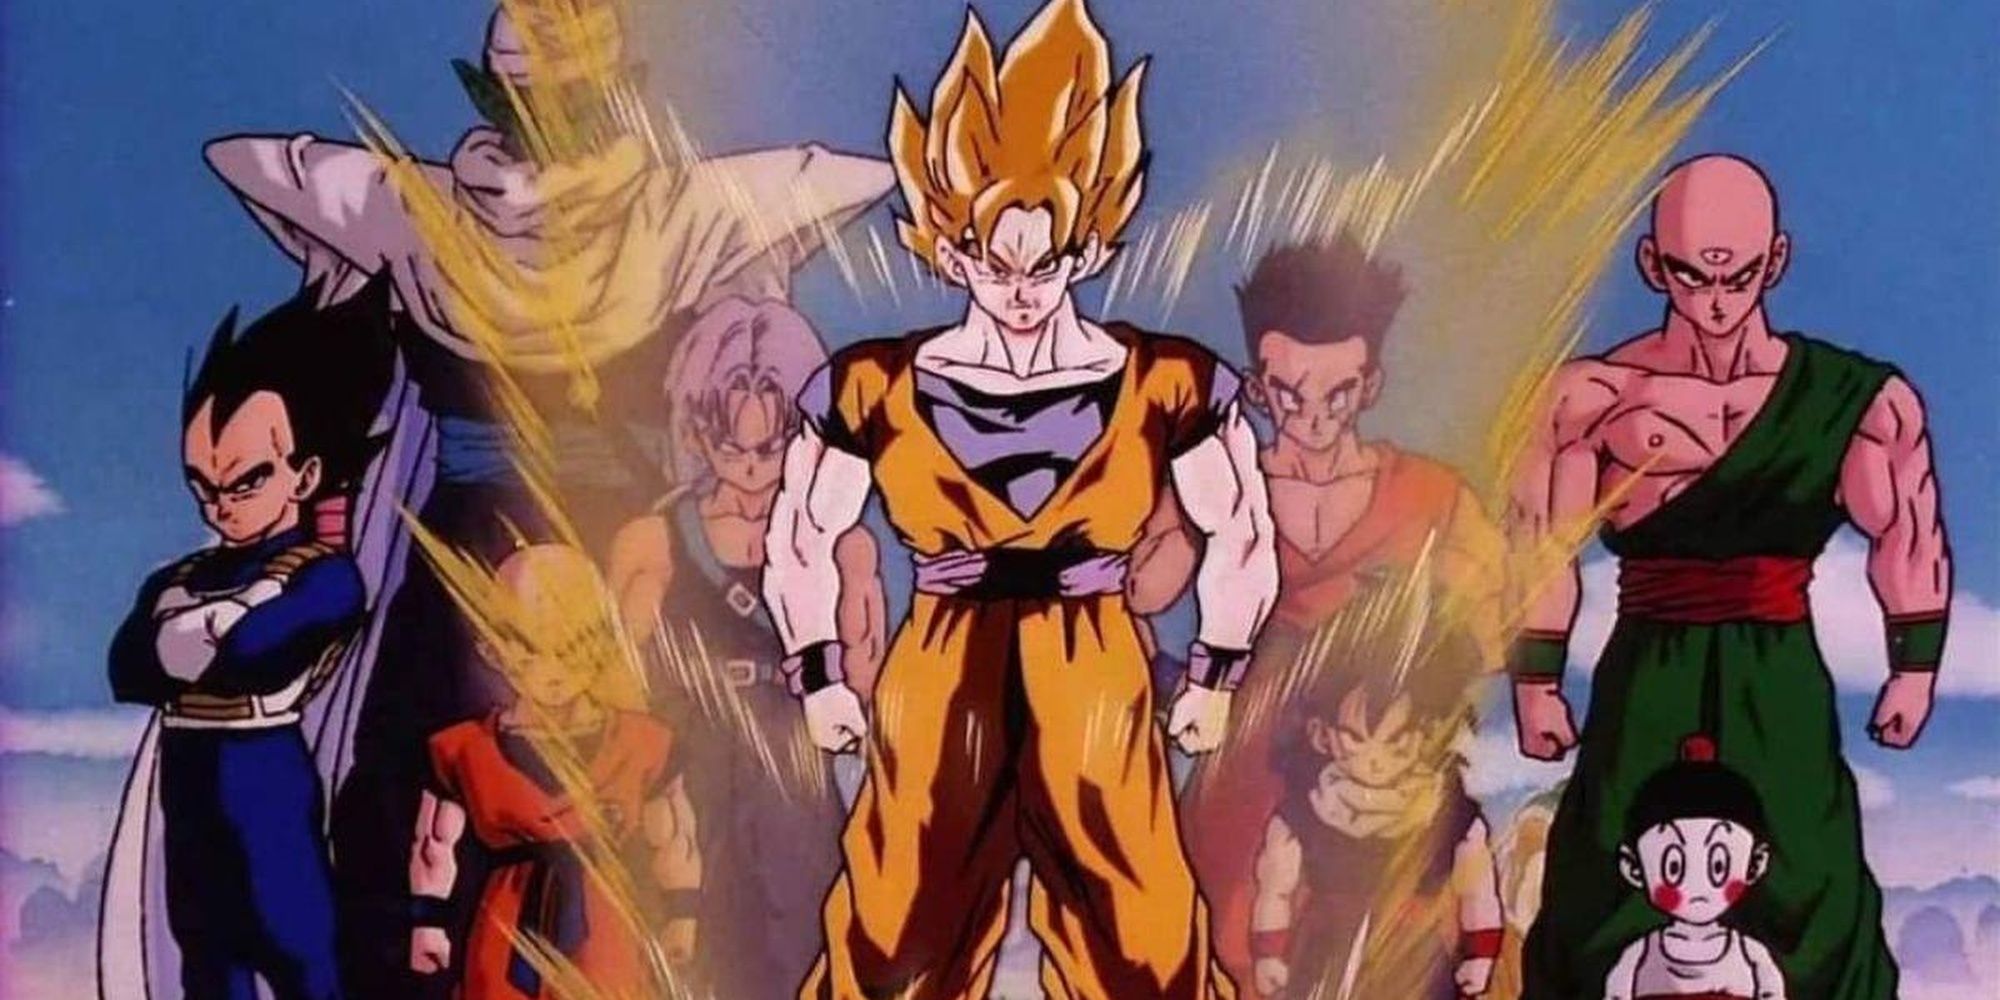 Goku and Team Z